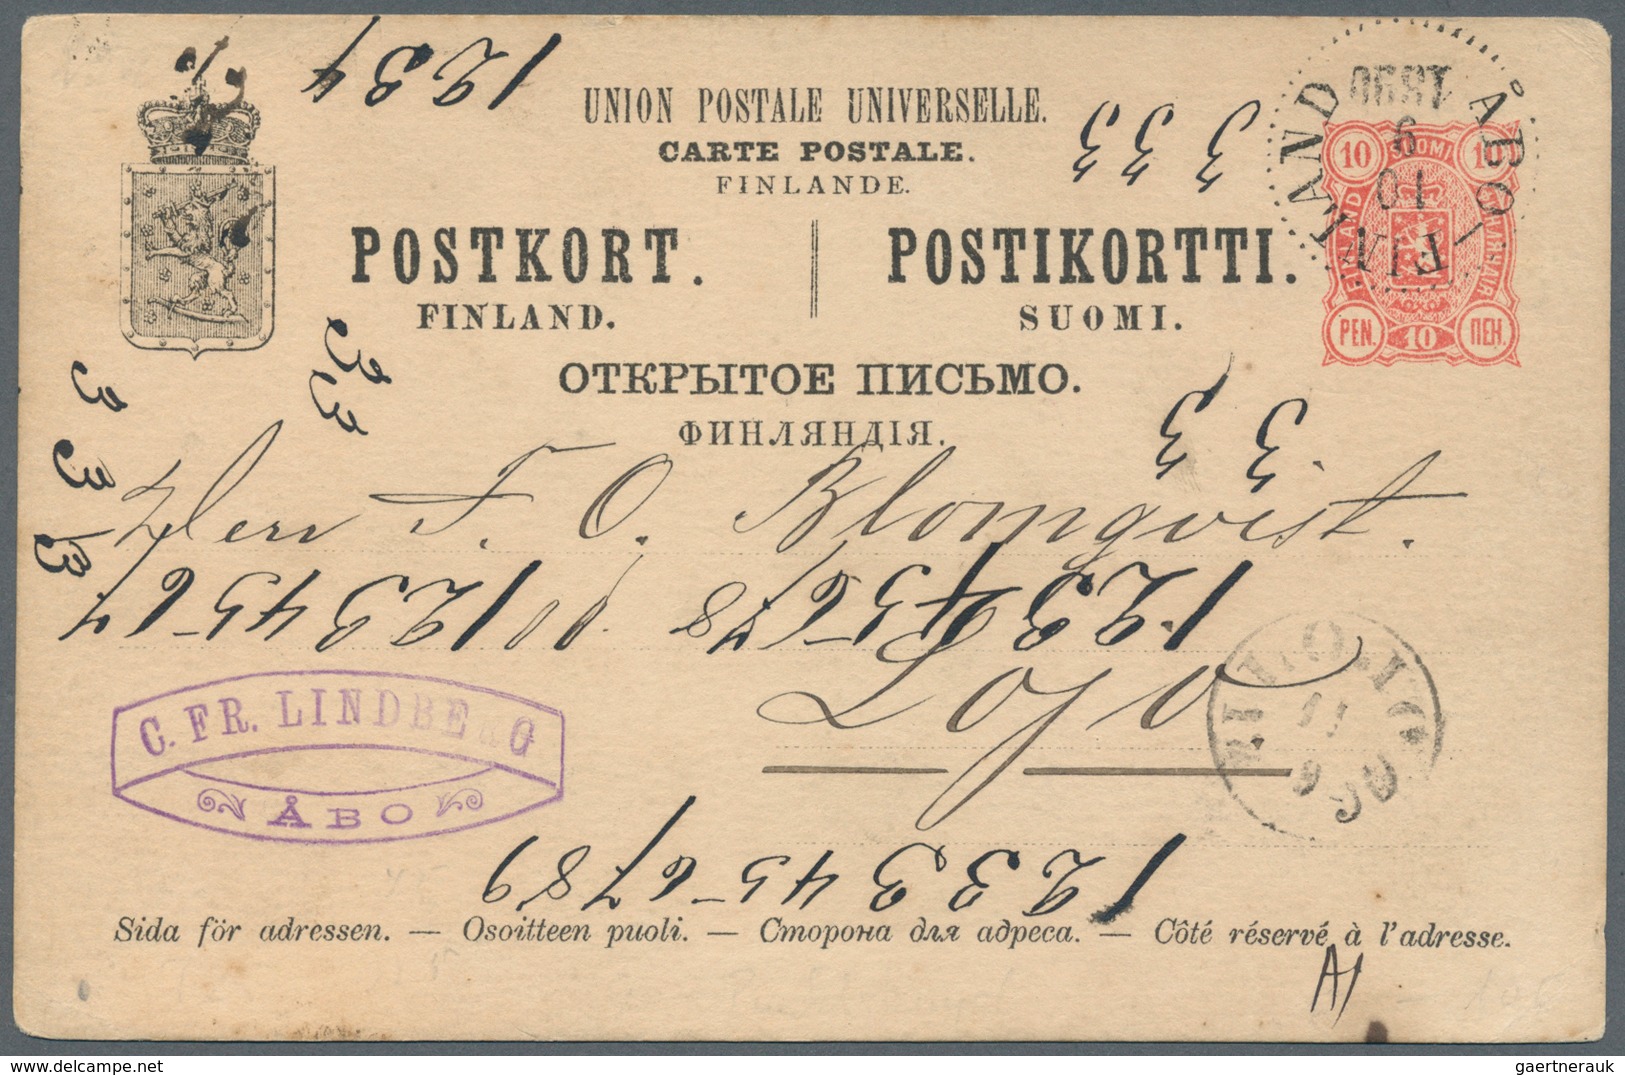 26338 Finnland - Stempel: 1880/1950, Gut 1000 Belege mit Schwerpunkt bei den Stempeln. Dabei Paketkarten a